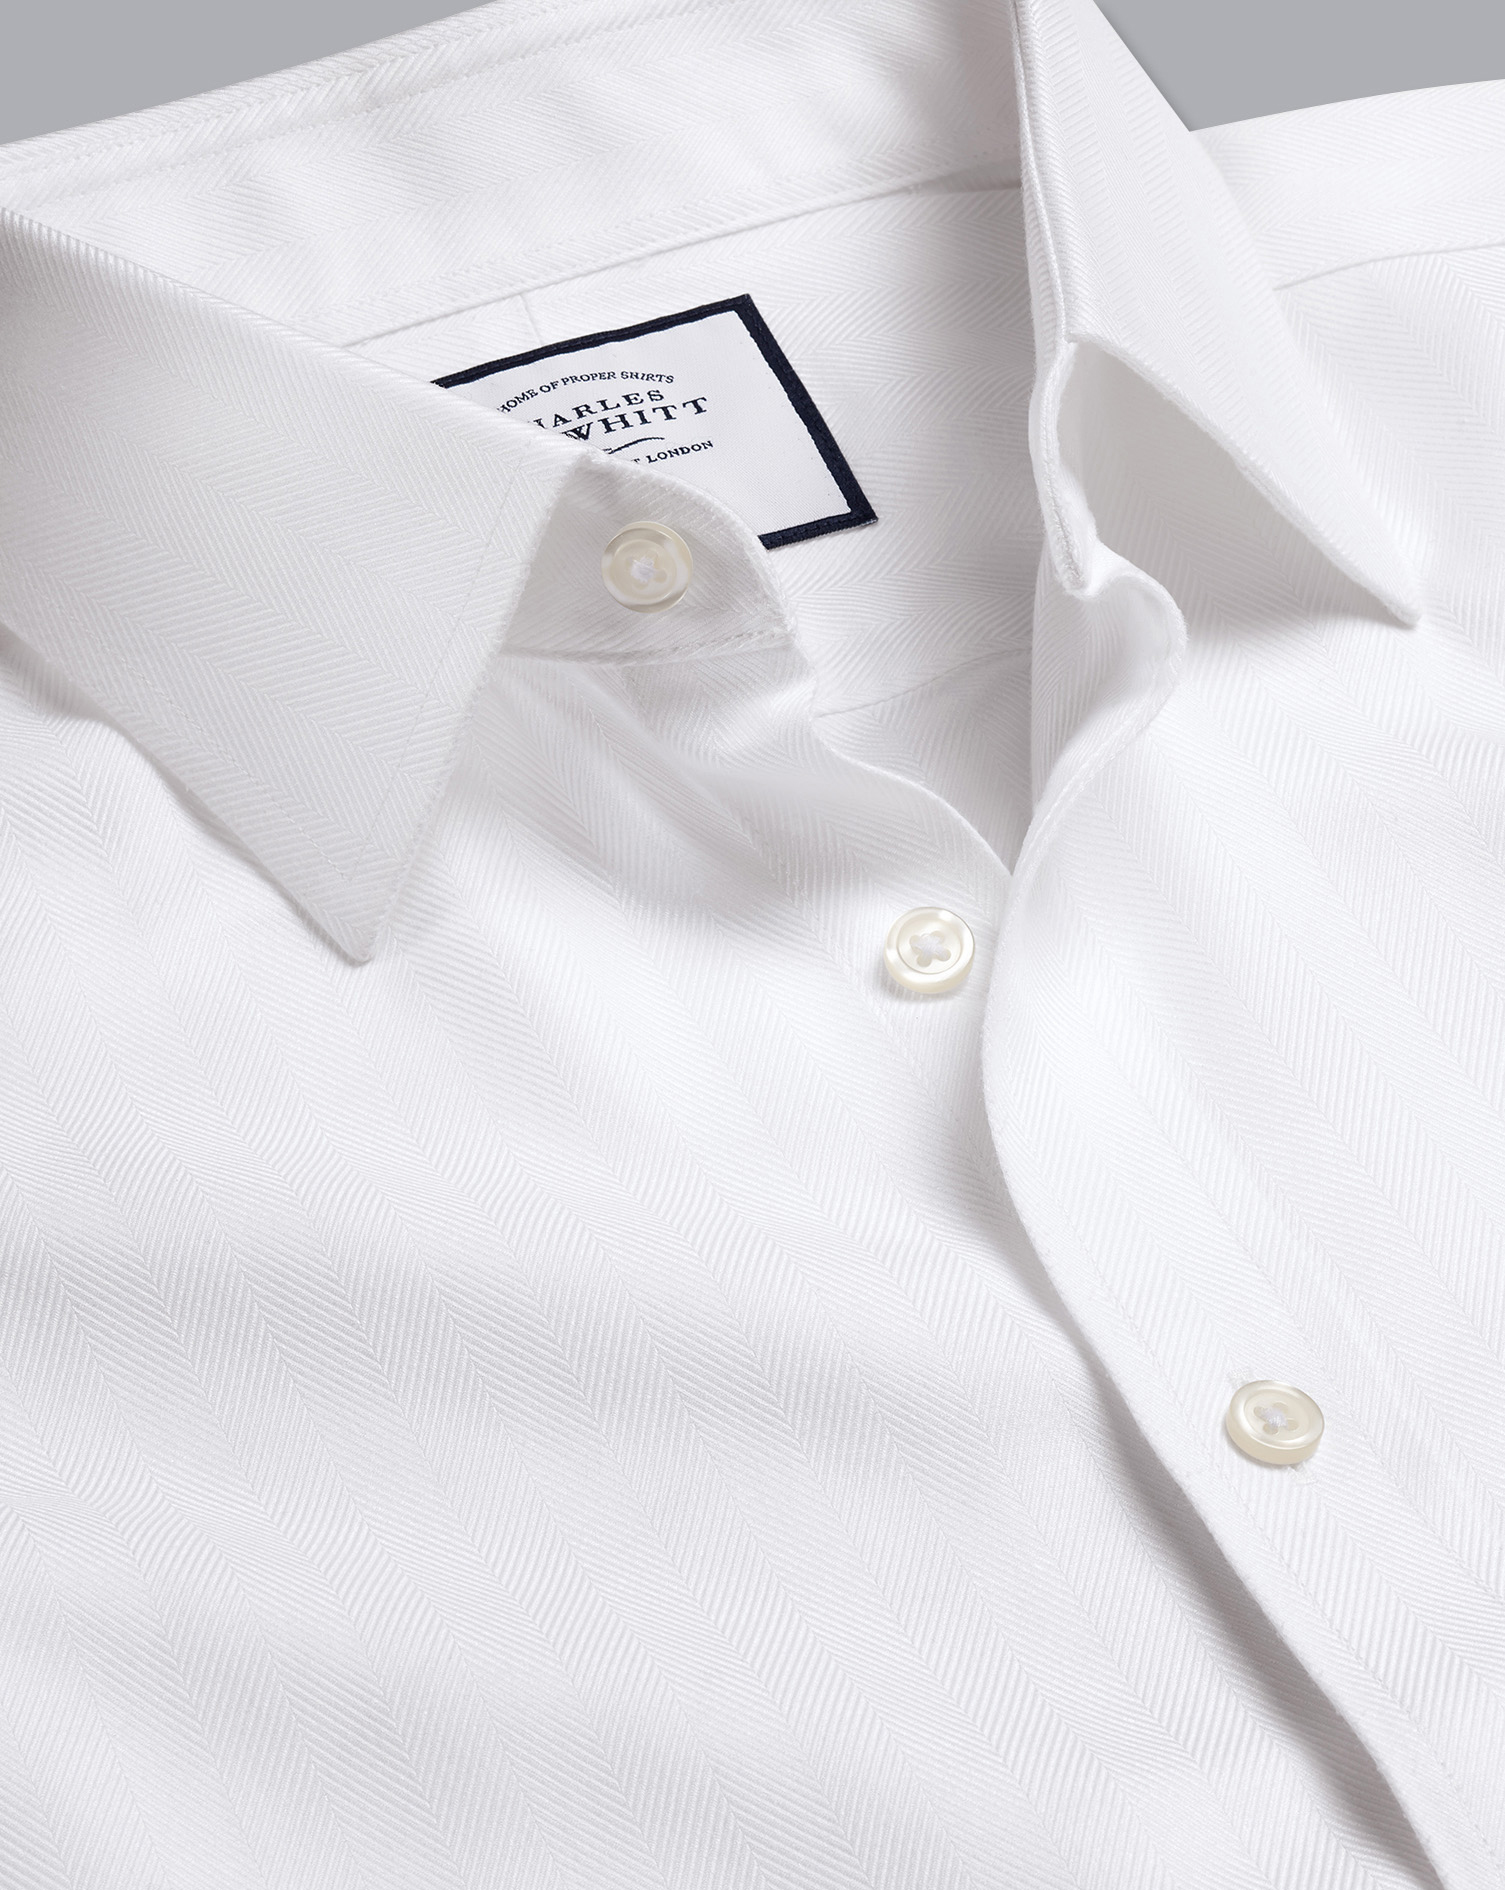 Men's Charles Tyrwhitt Non-Iron Herringbone Dress Shirt - White Single Cuff Size Medium Cotton
